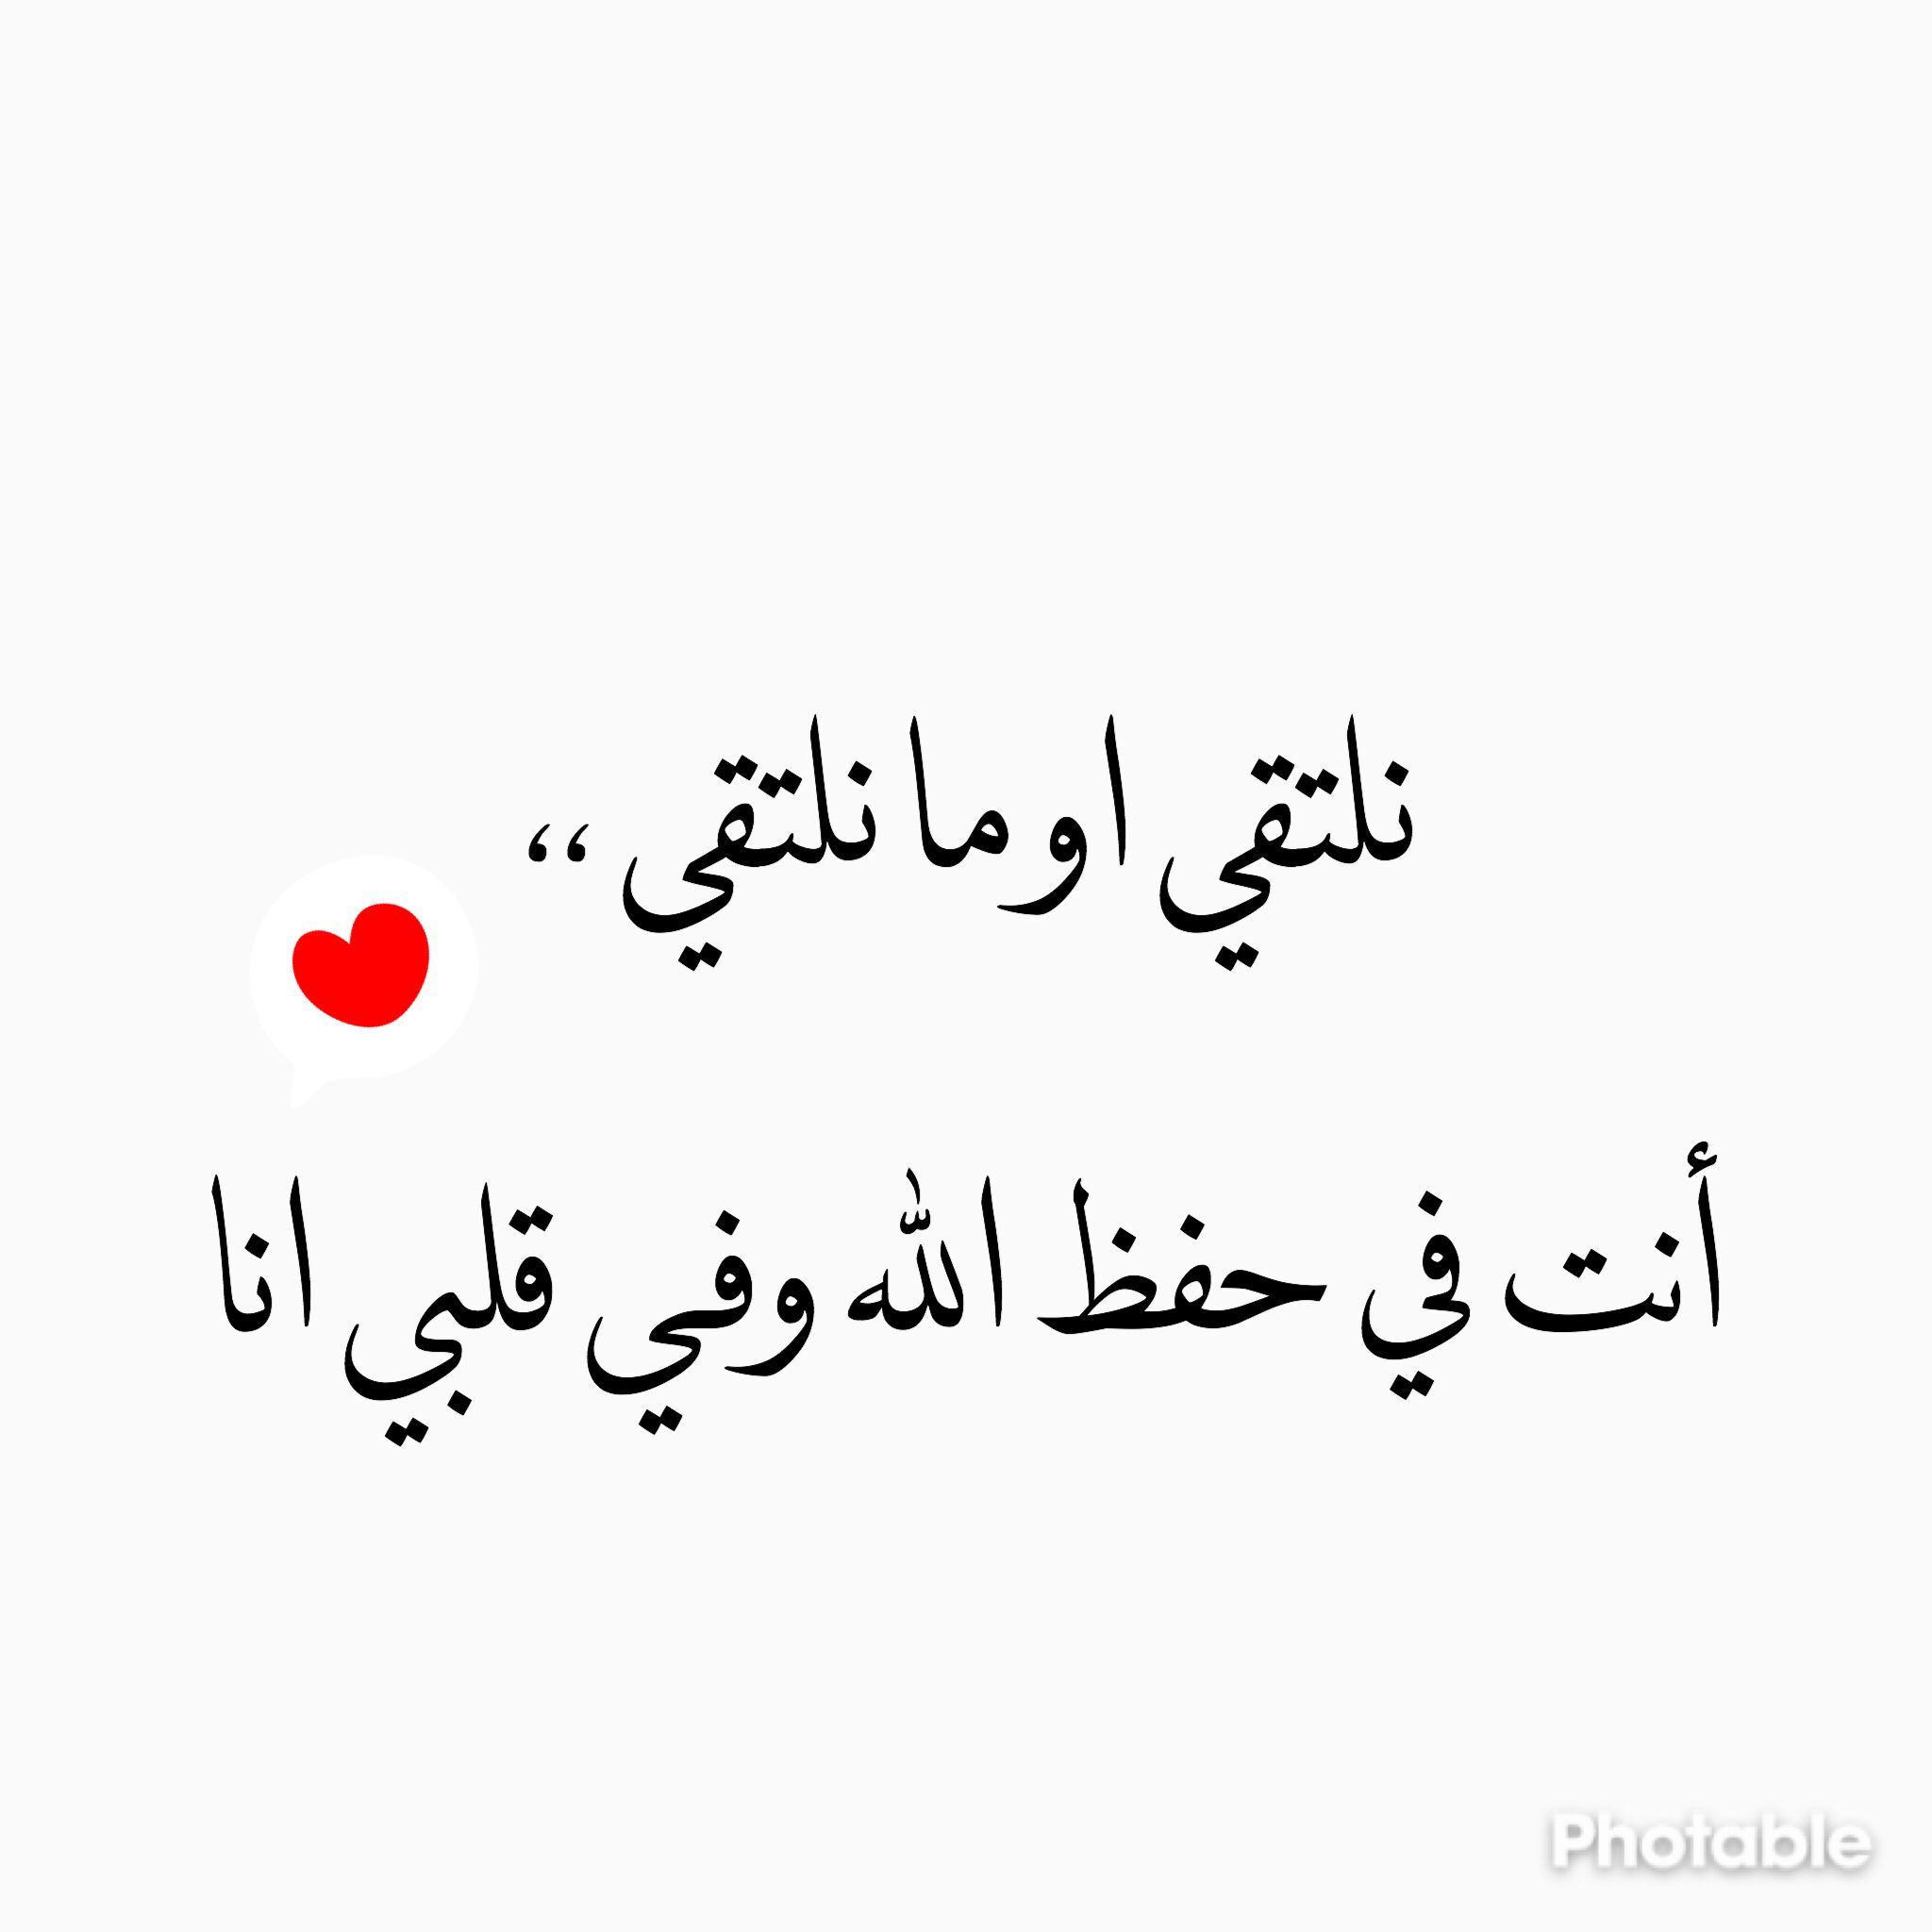 قد نلتقي. Love words, Arabic love quotes